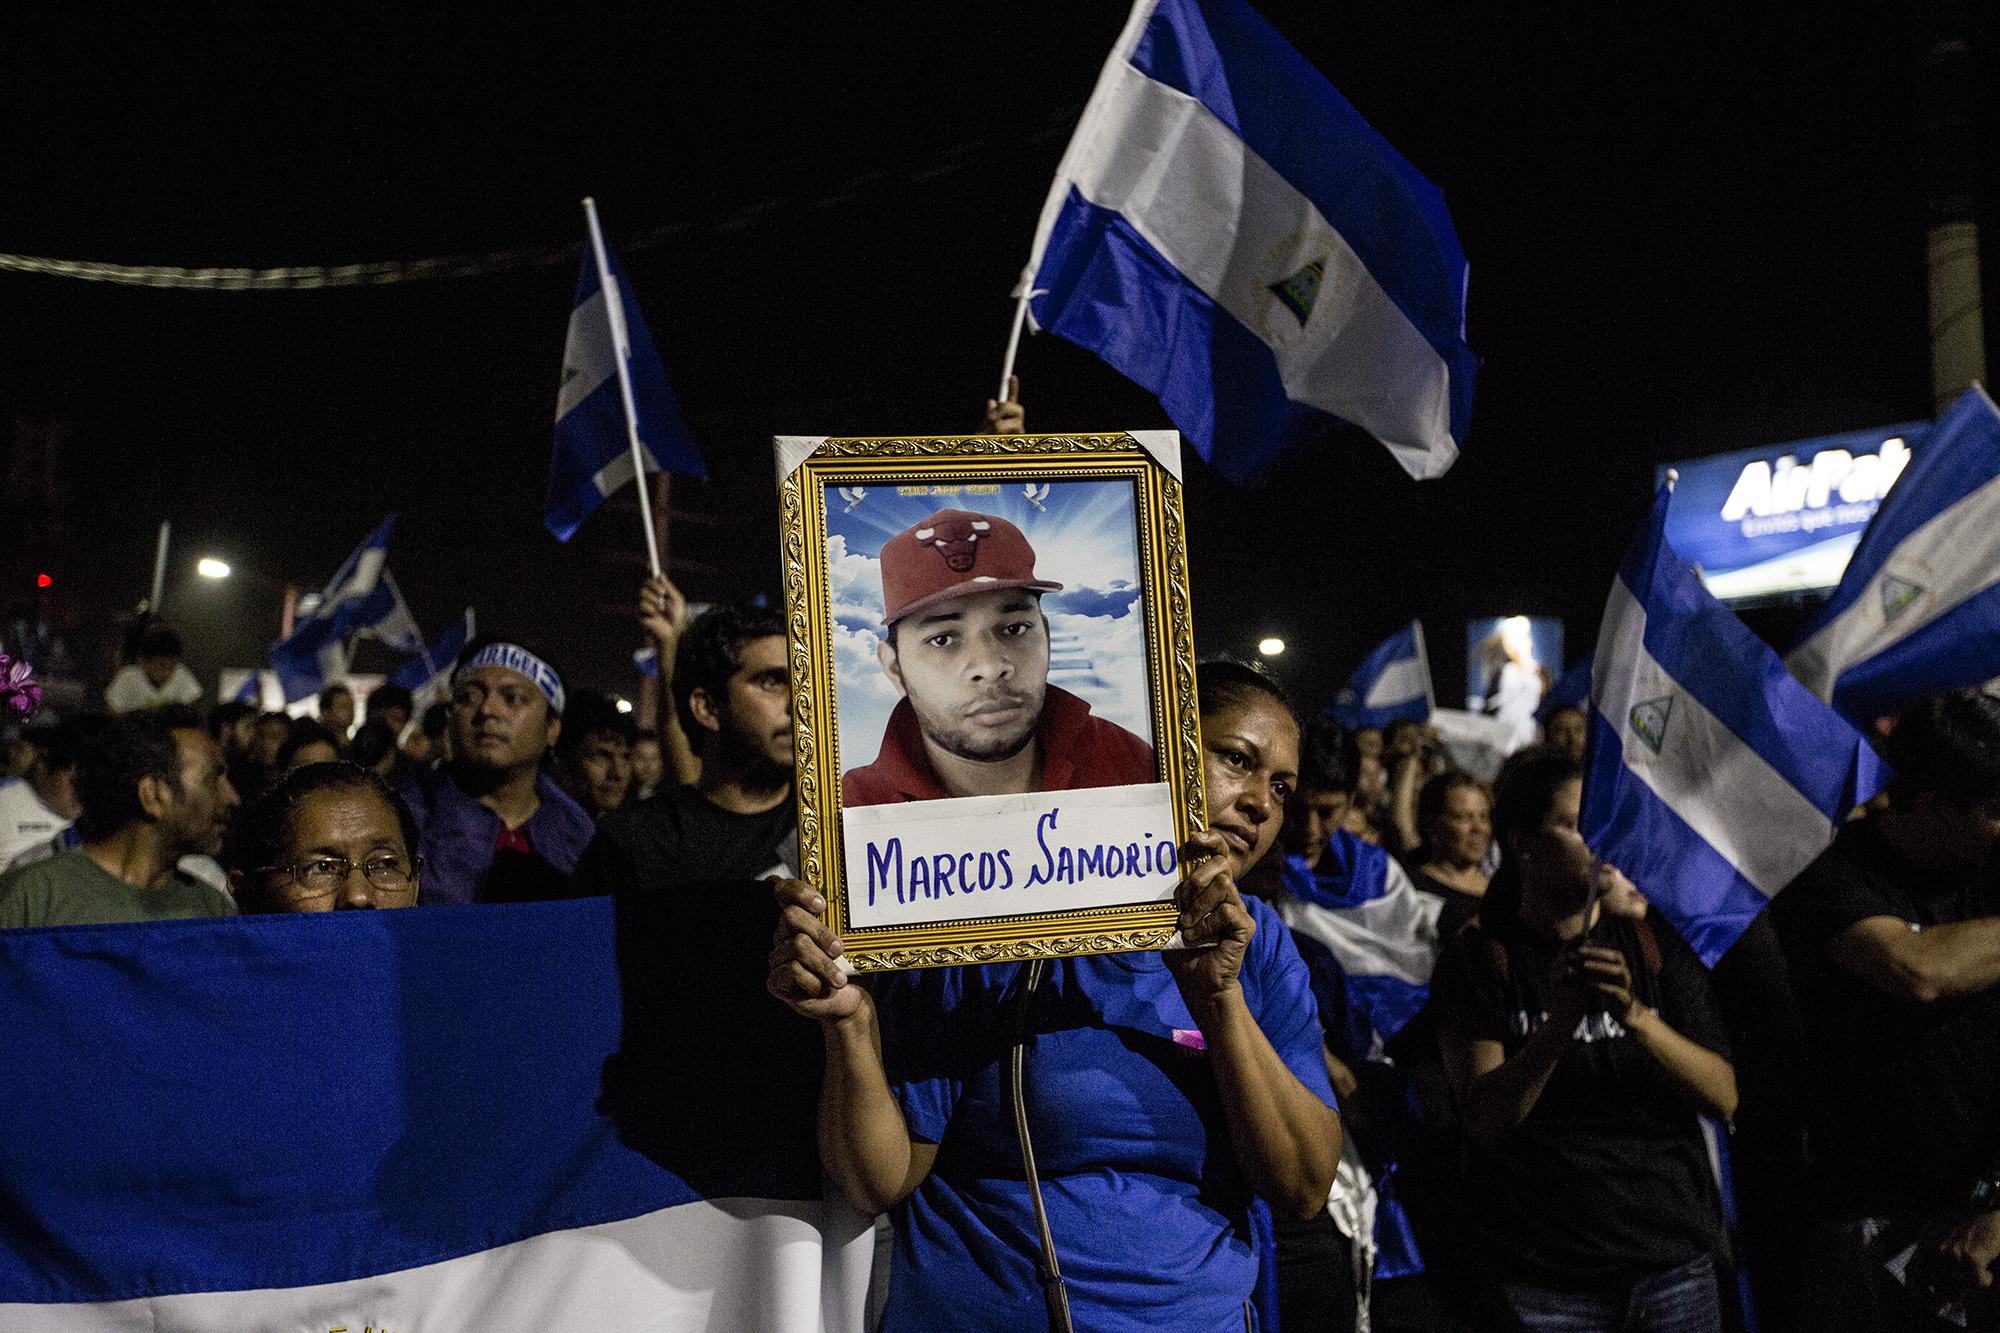 La tía de Marcos Samorio levanta un retrato de su sobrino, asesinado el 20 de abril por grupos de choque a favor del régimen de Daniel Ortega. Foto de Fred Ramos